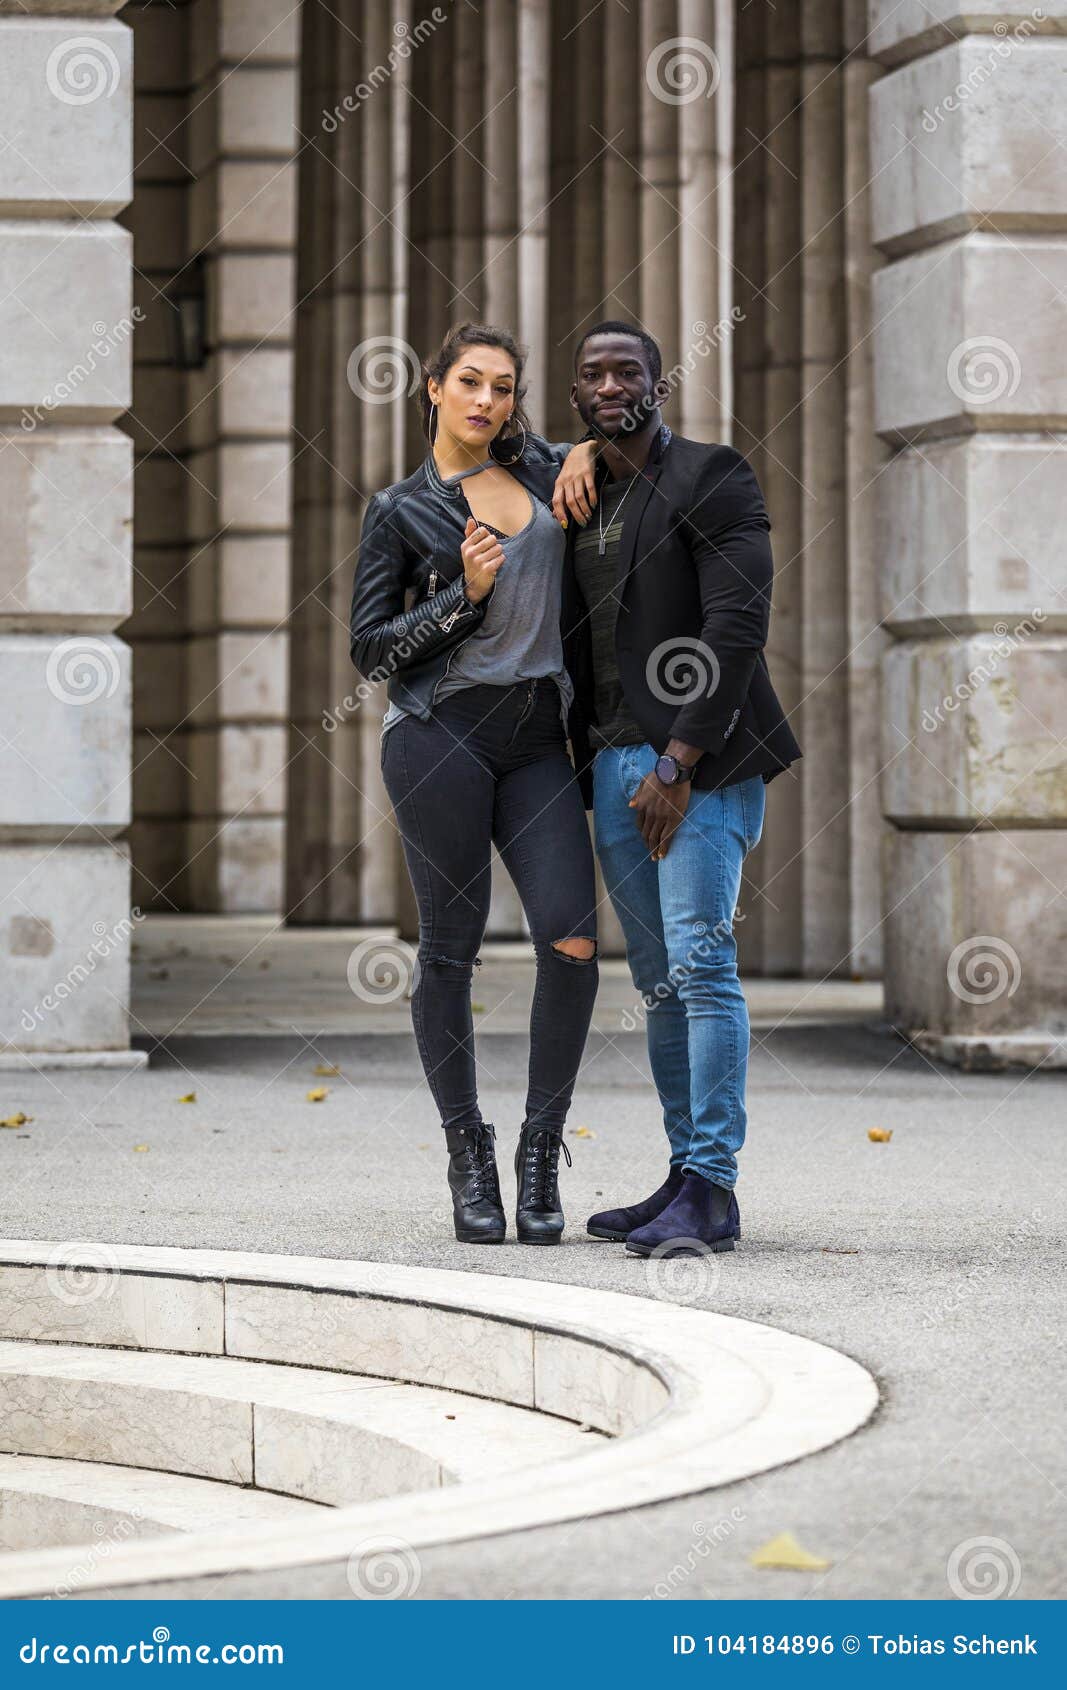 Stylish Black and White Couple on Street Stock Photo - Image of ...